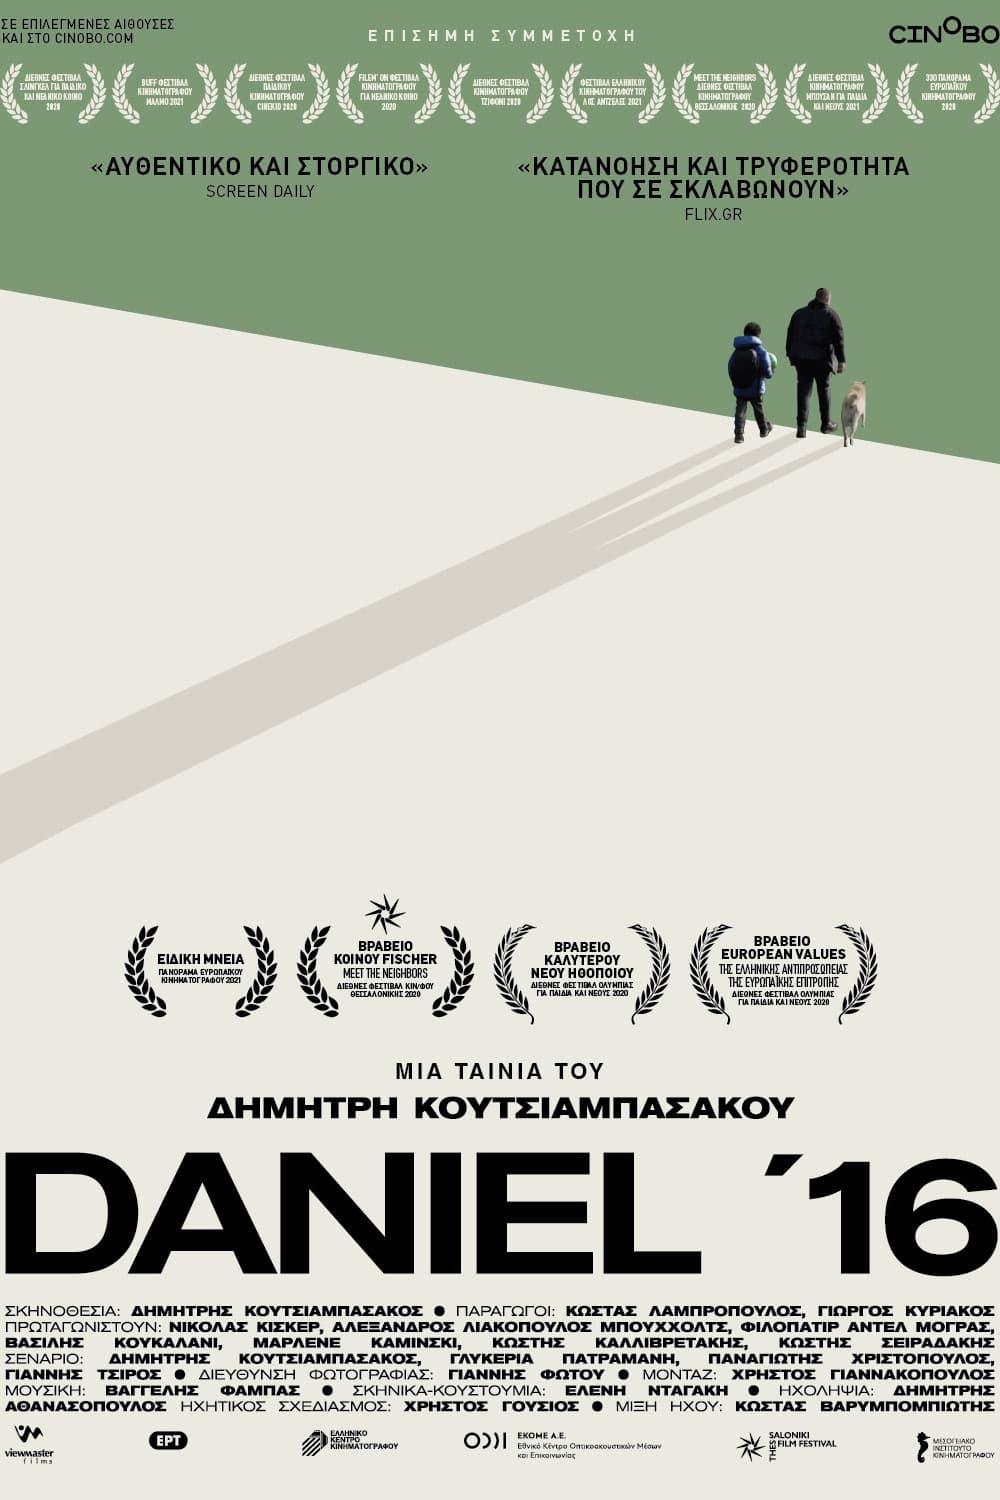 Daniel '16